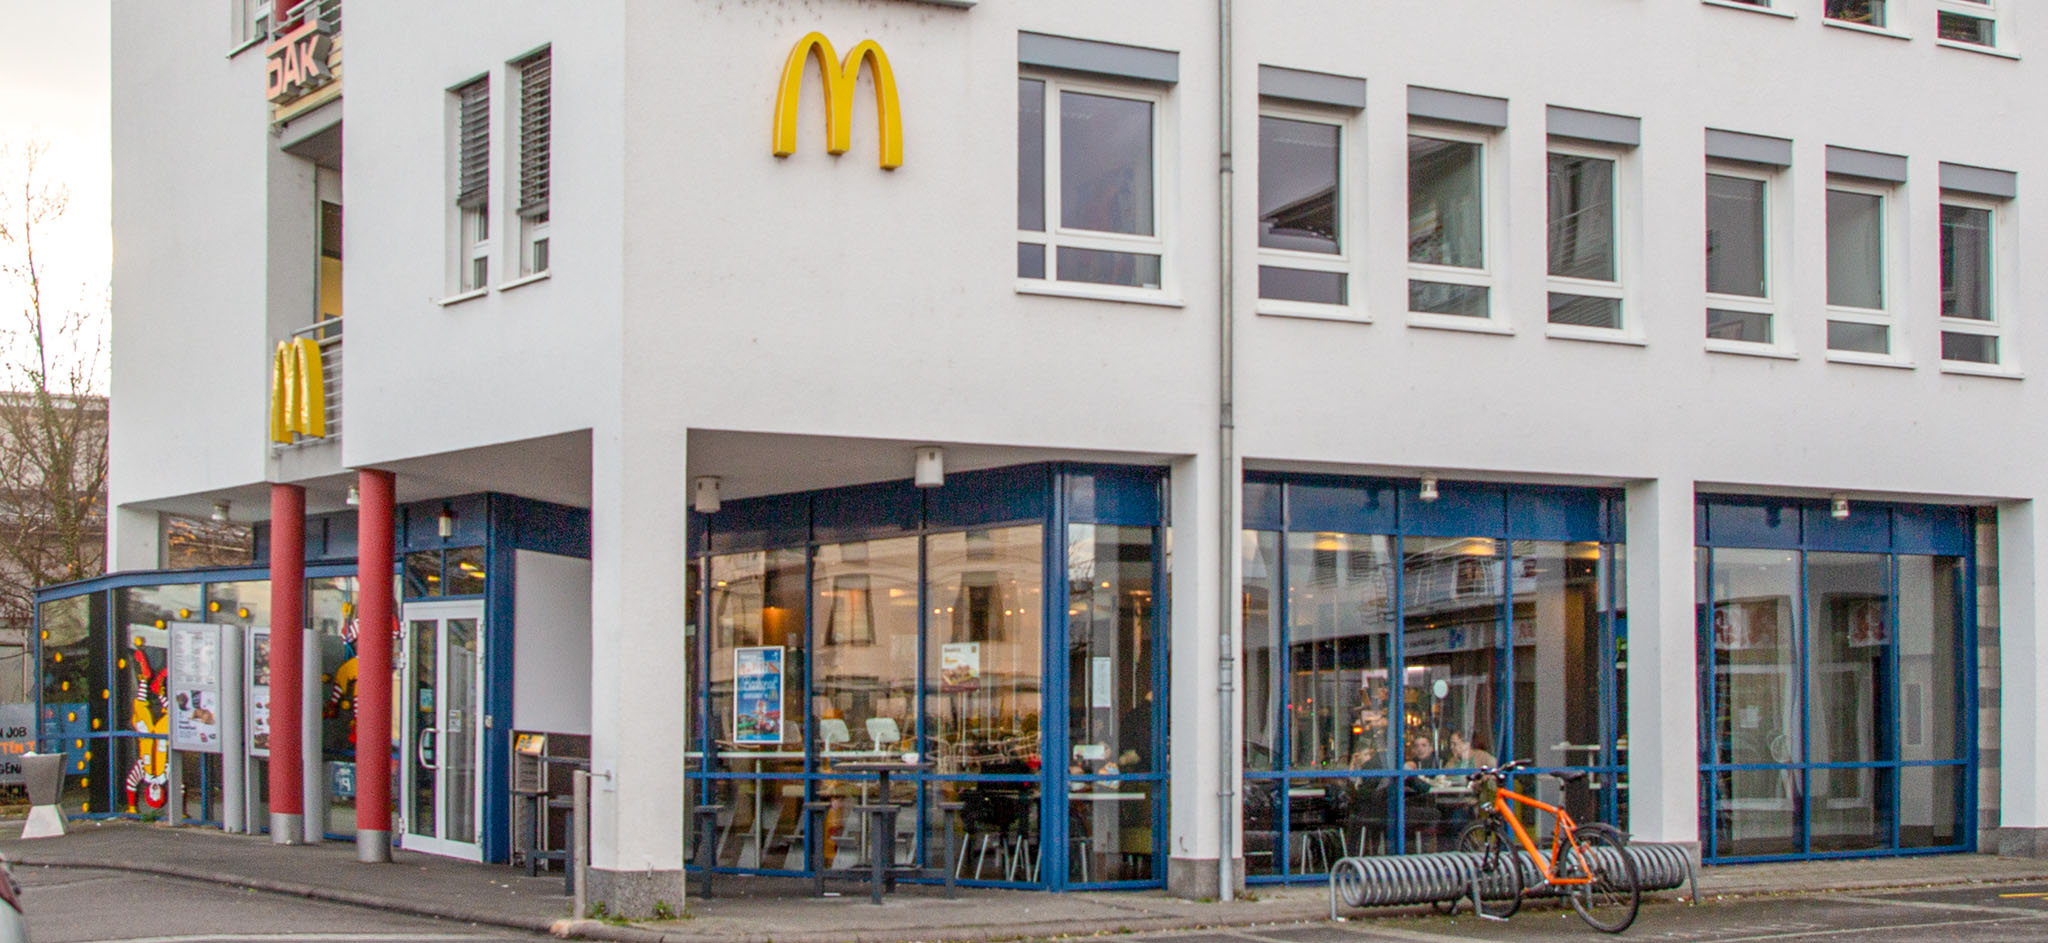 Das McDonald’s-Restaurant in Weinheim